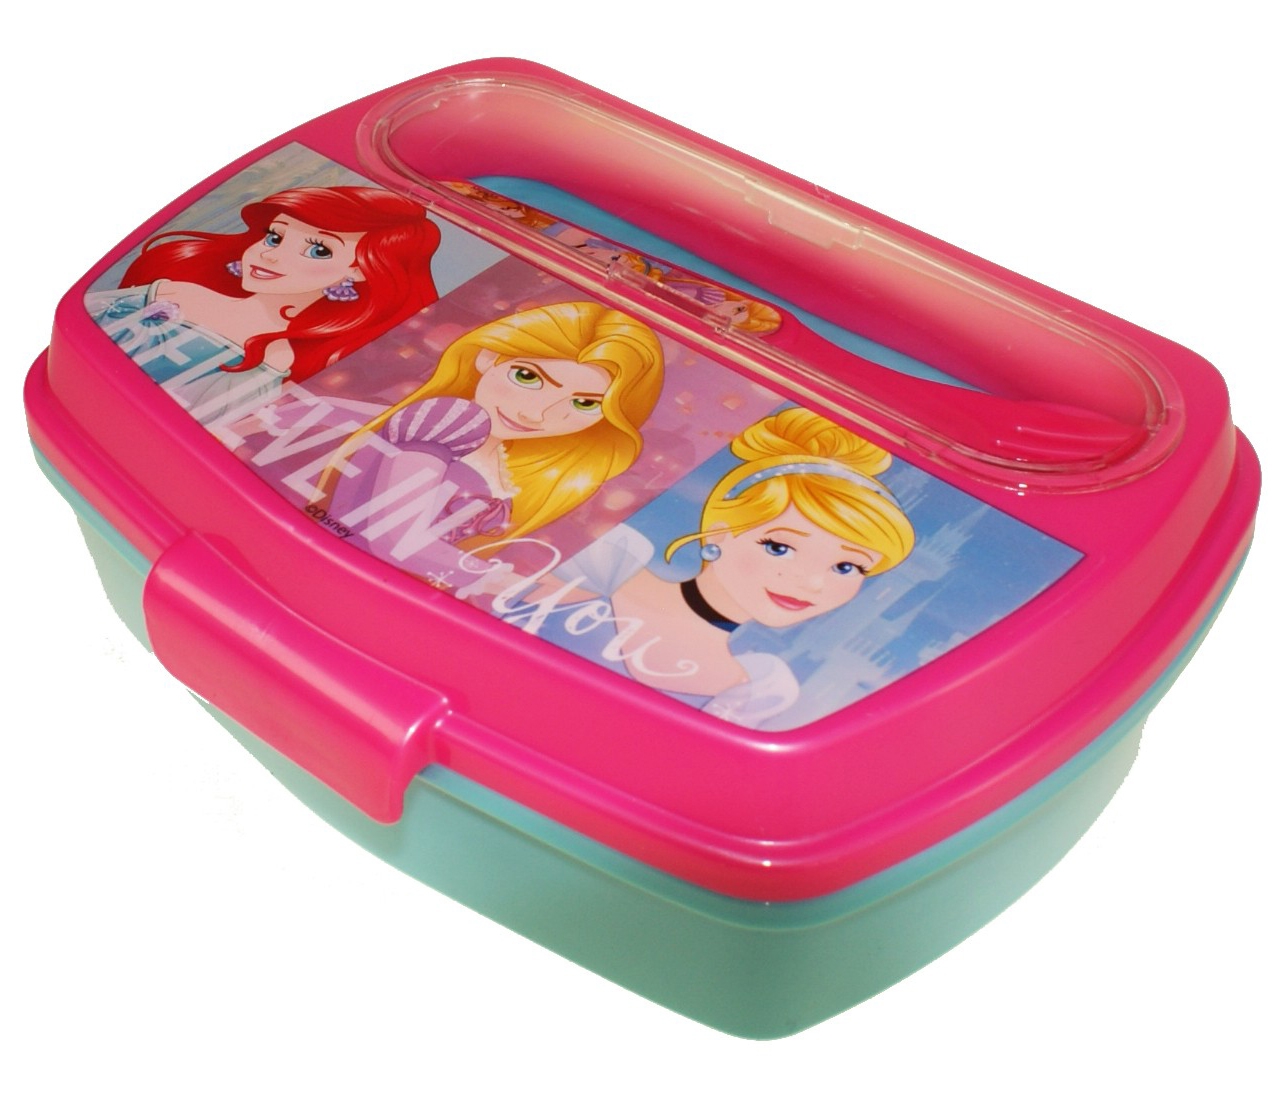 Disney Princess 'Friends' Girls School Sandwich Box with Cutlery Lunch